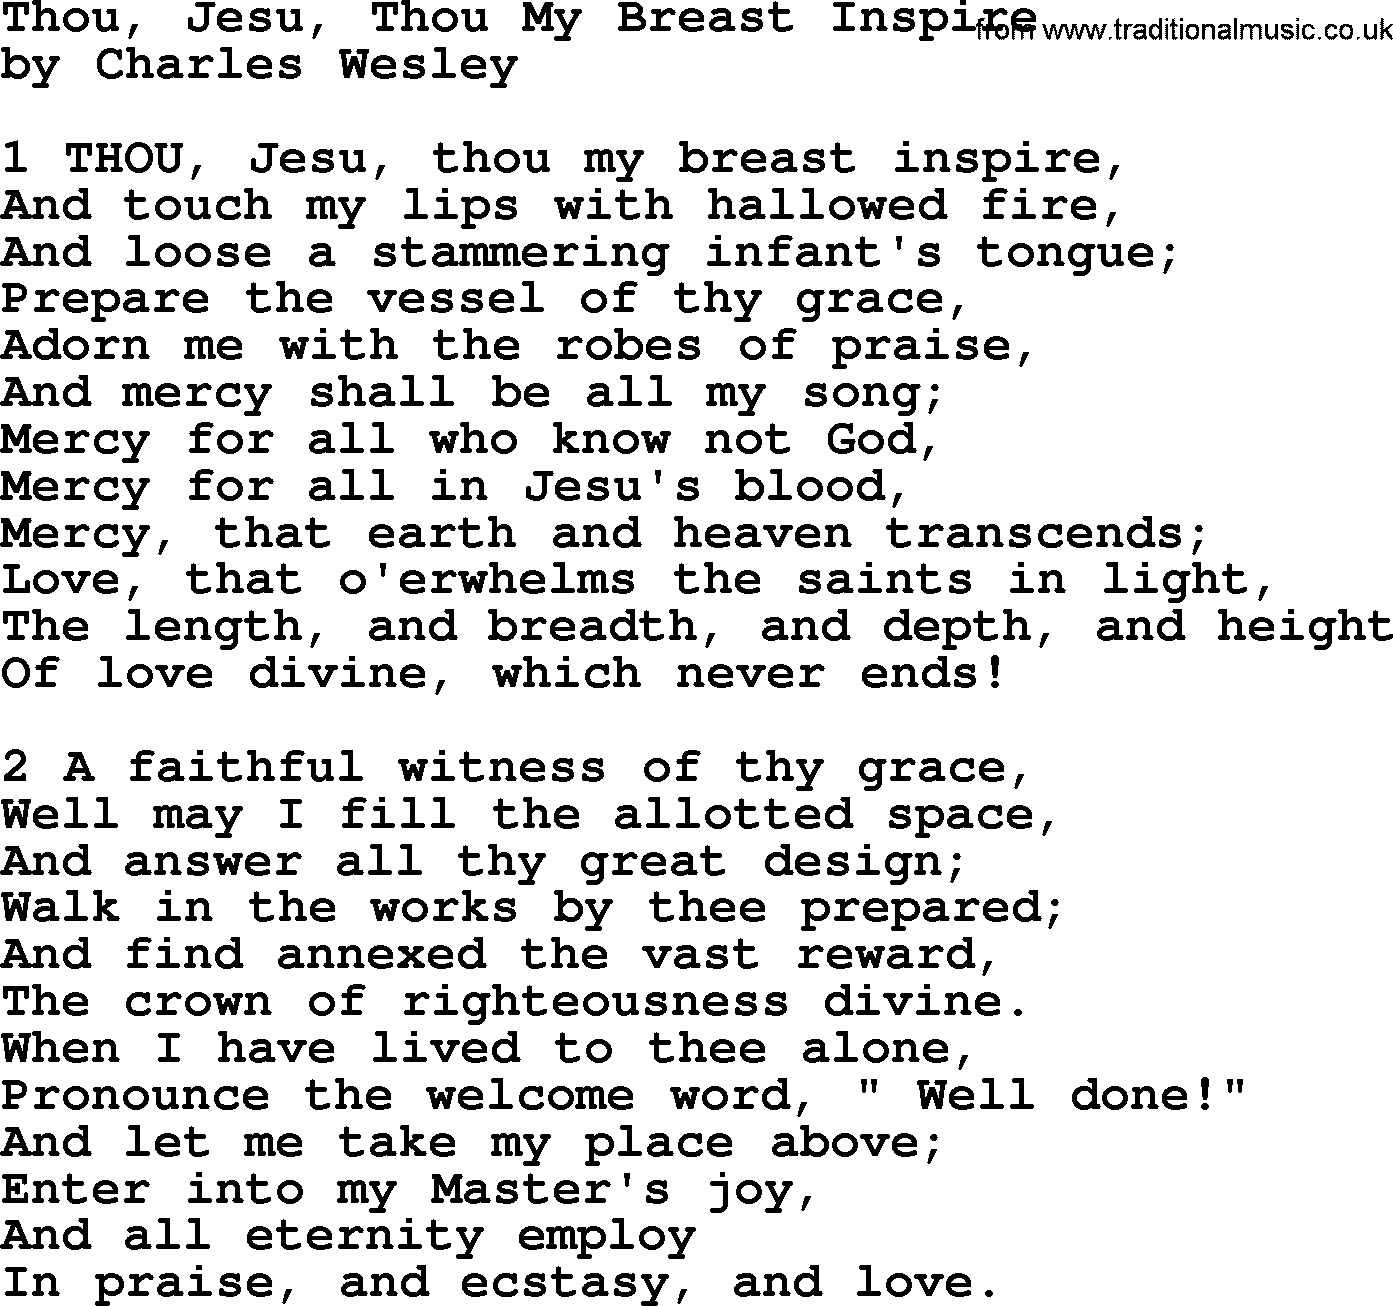 Charles Wesley hymn: Thou, Jesu, Thou My Breast Inspire, lyrics